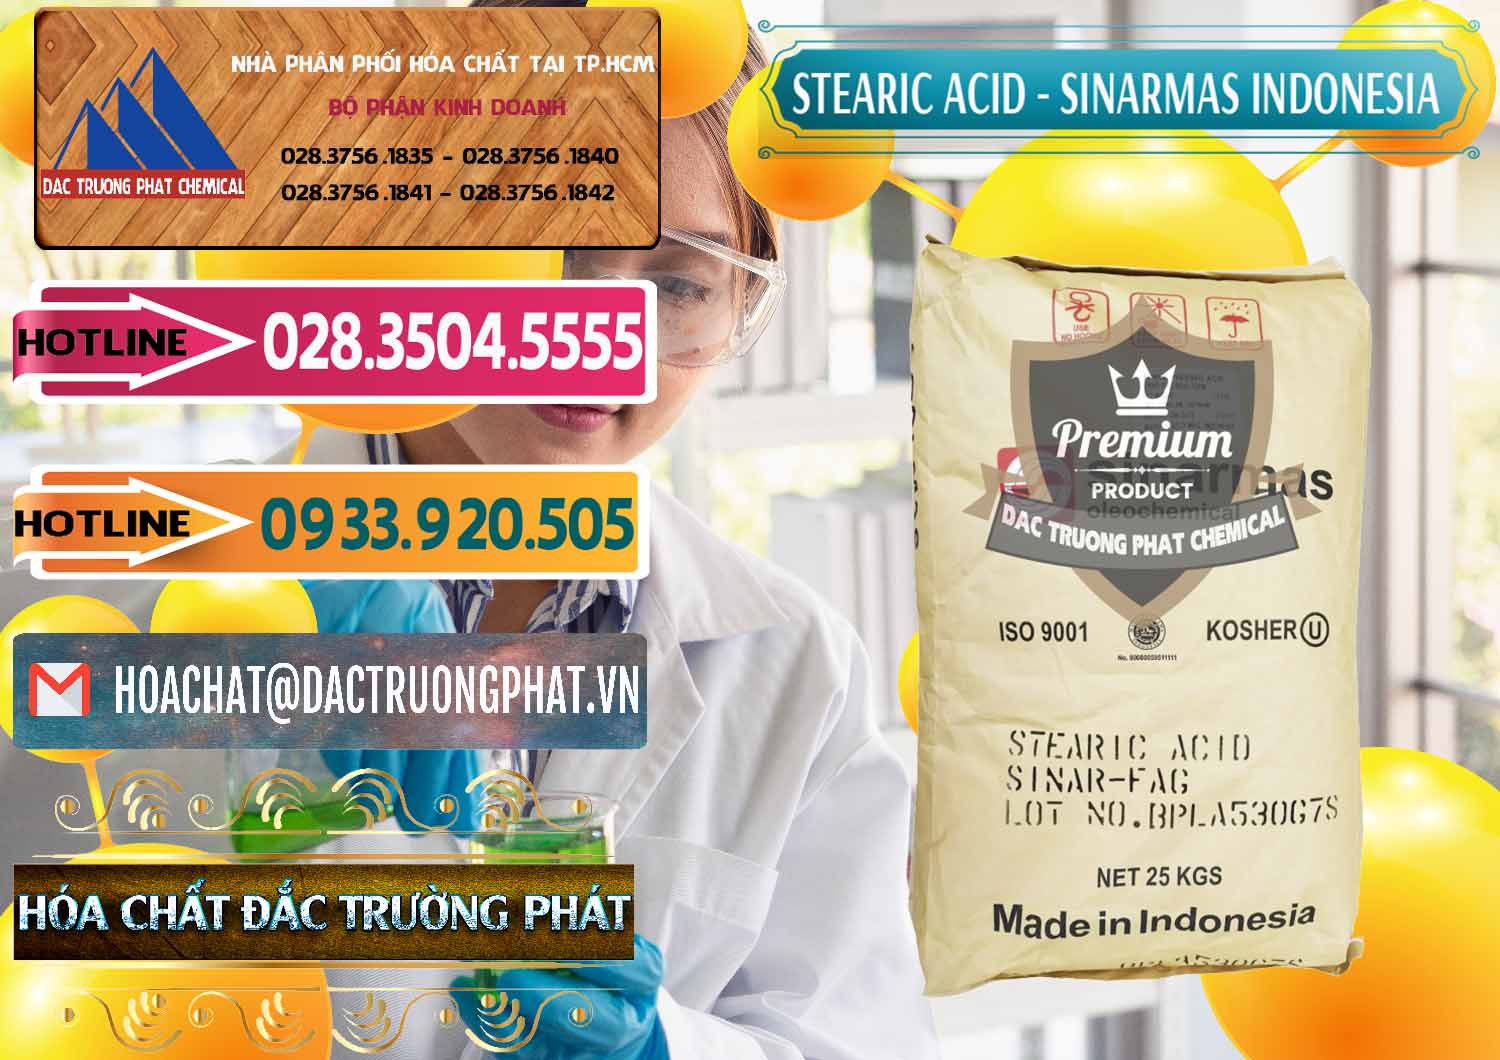 Chuyên bán & cung ứng Axit Stearic - Stearic Acid Sinarmas Indonesia - 0389 - Nhà cung cấp _ nhập khẩu hóa chất tại TP.HCM - dactruongphat.vn